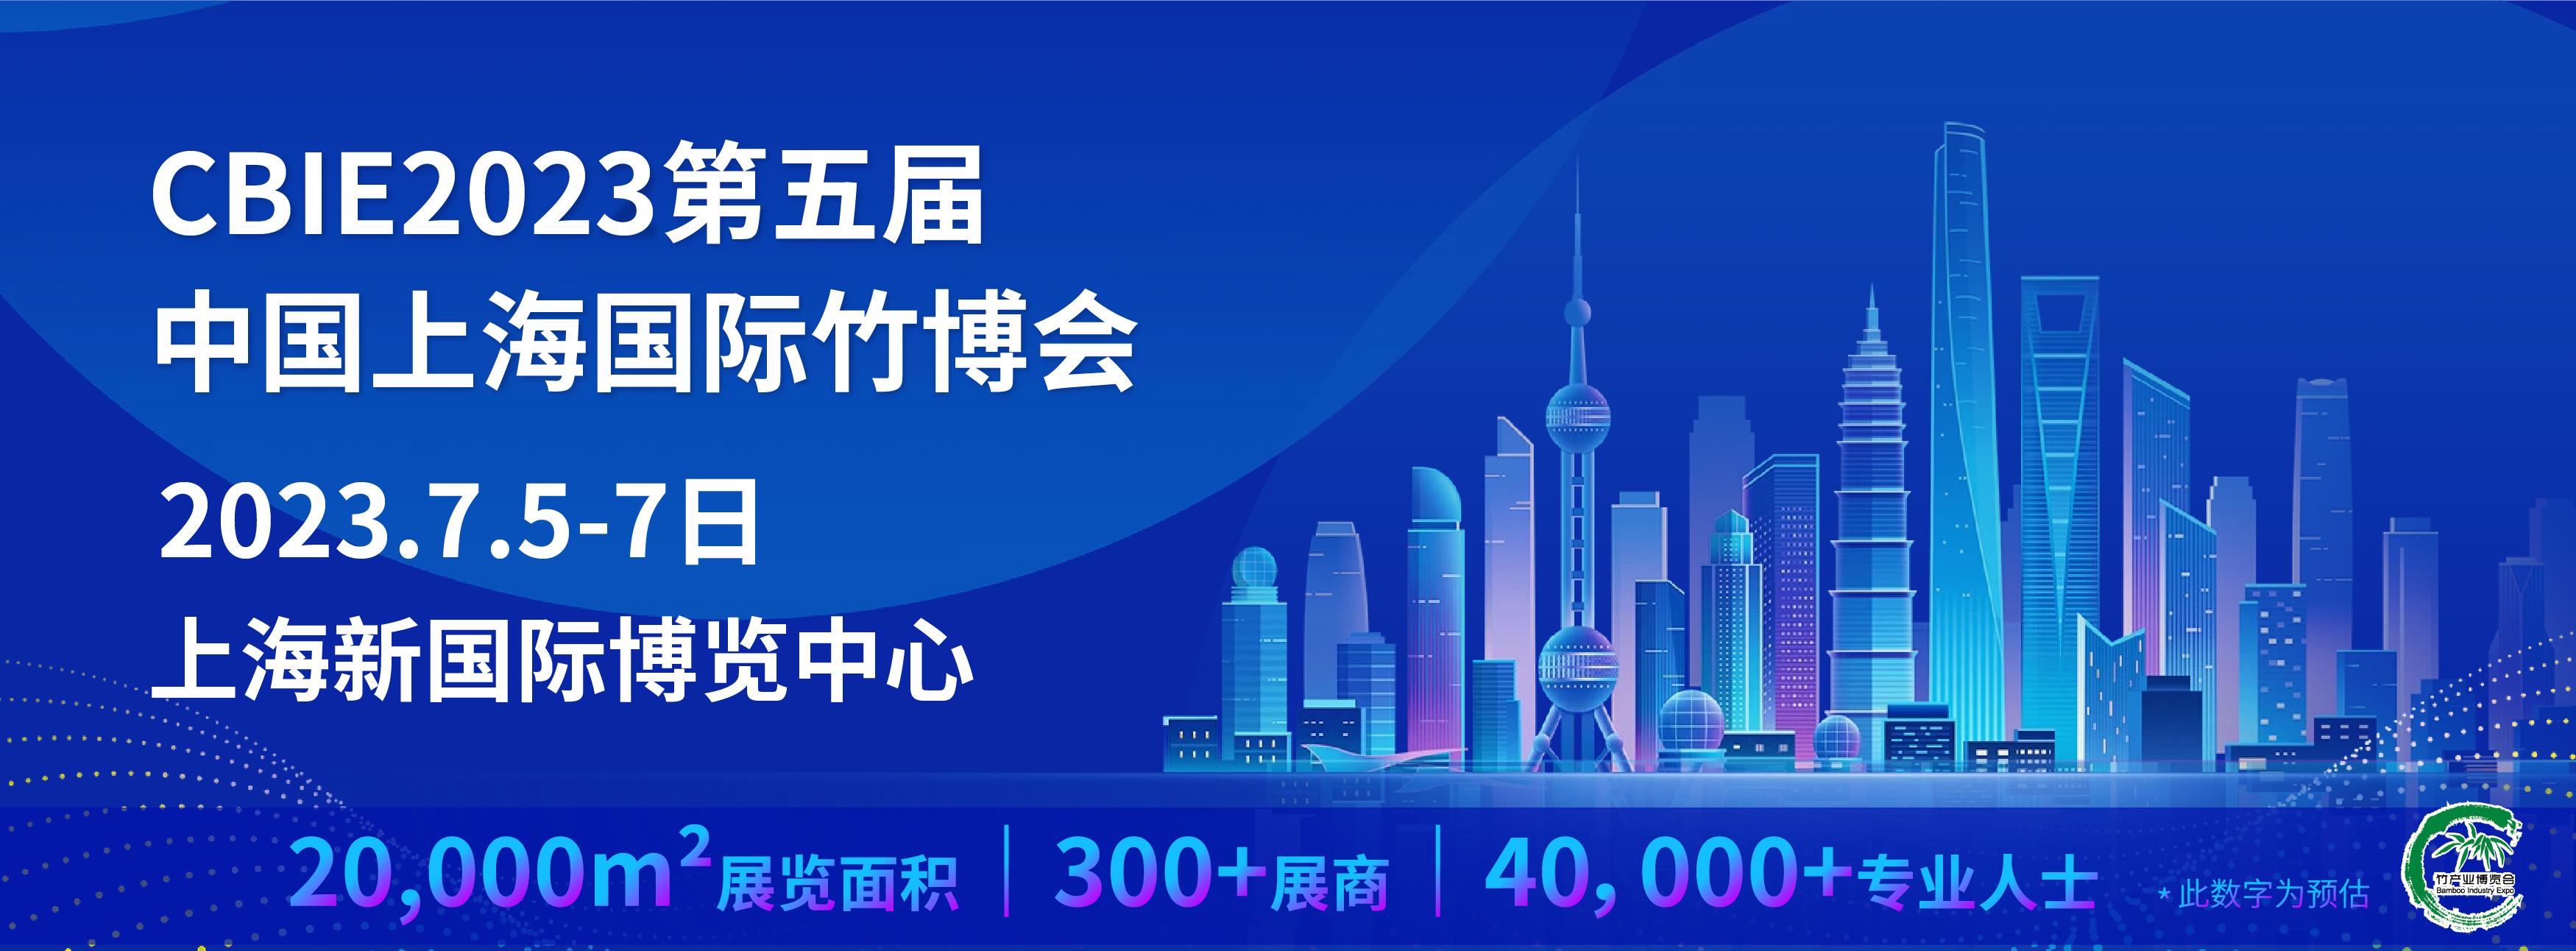 竹窗帘展2023上海国际竹博会升华之旅